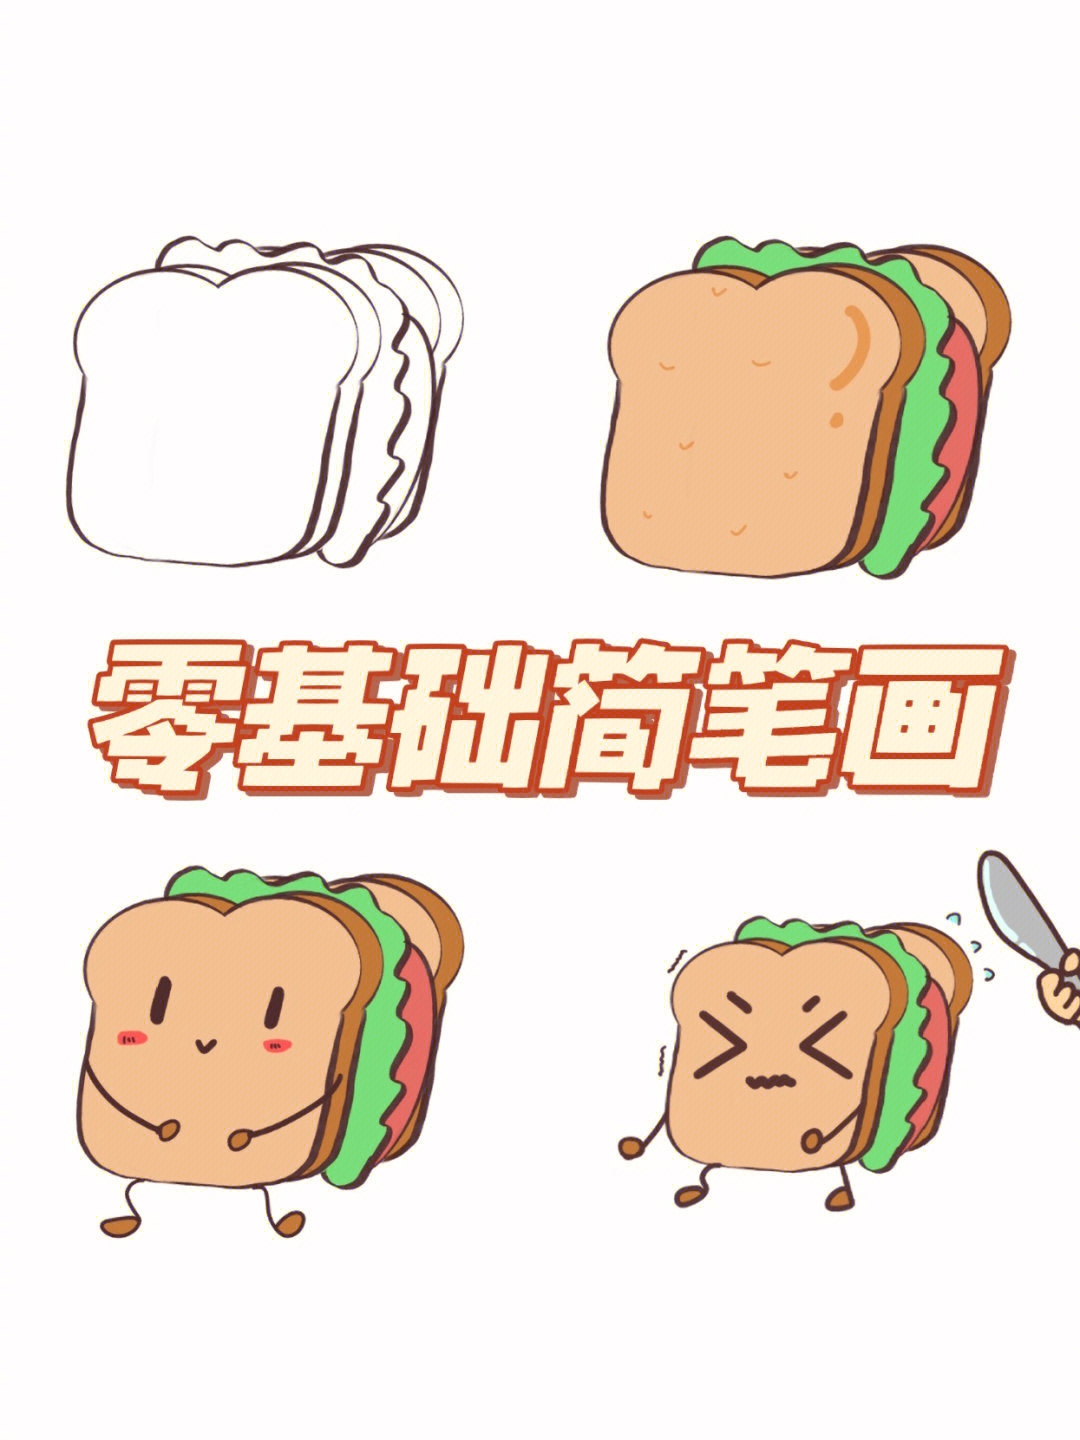 简笔三明治的画法图片